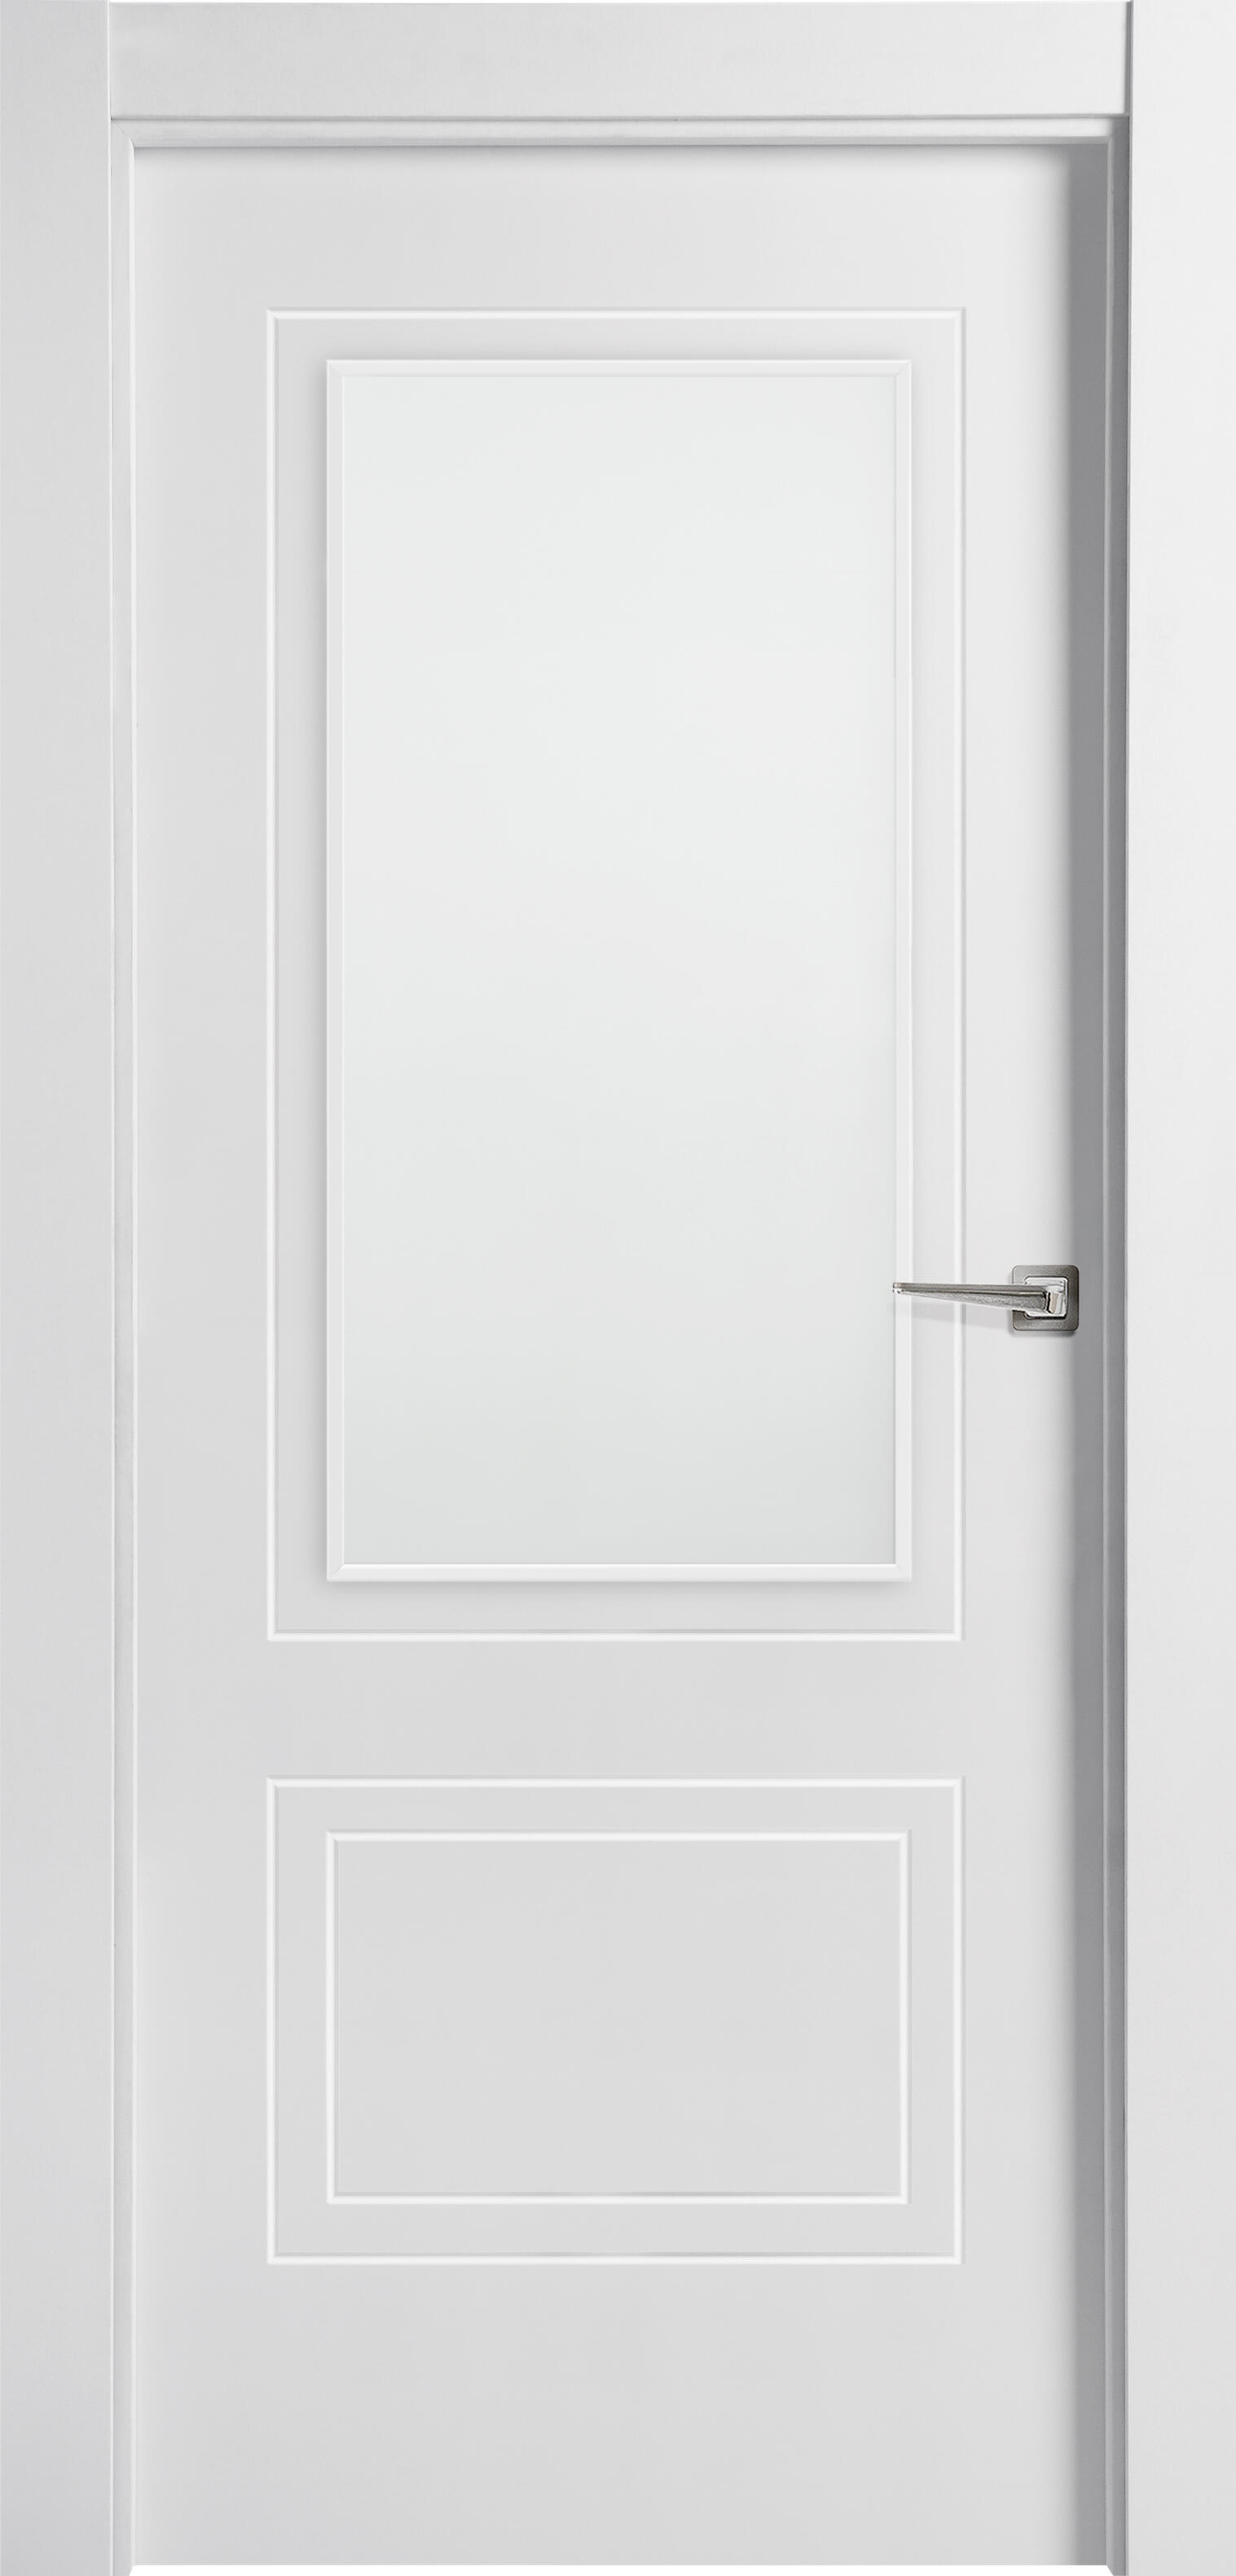 Puerta boston blanco de apertura izquierda con cristal 72.5 cm